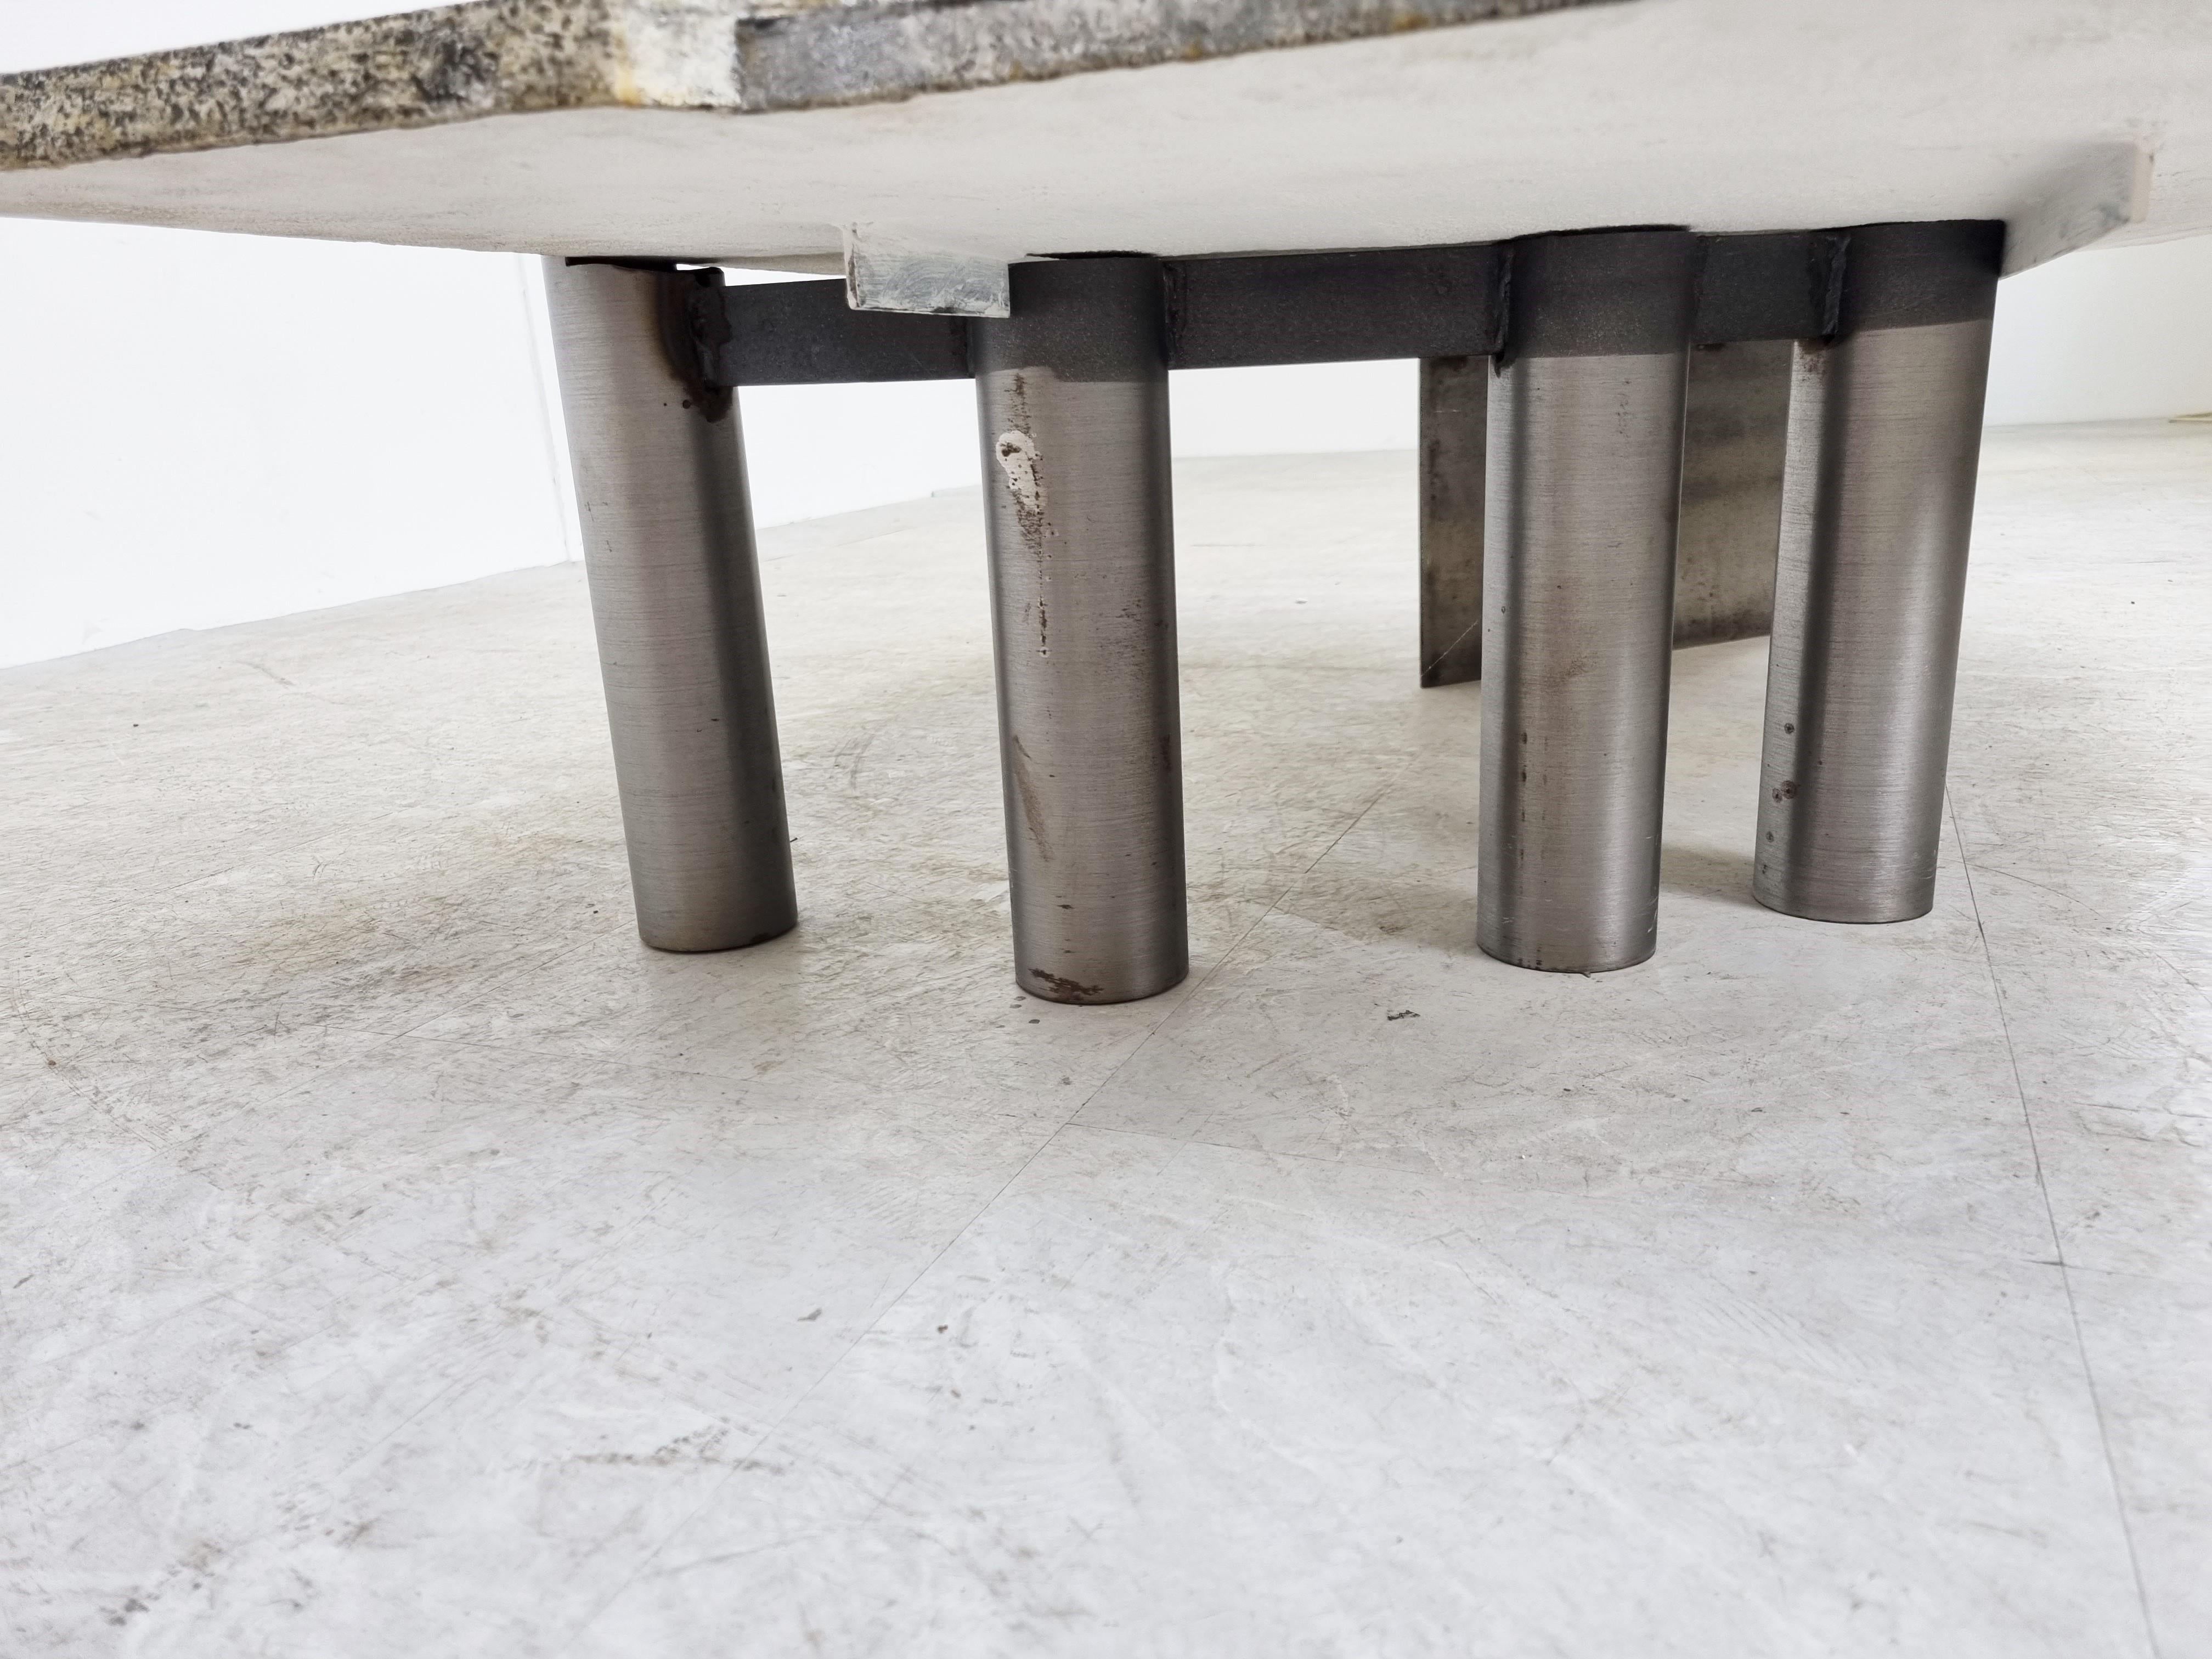 Table basse brutaliste manfacturée par Pia Manu.

La table se compose d'un plateau mixte en céramique et en aluminium et d'une base en acier et en aluminium.

Magnifique table basse unique au design remarquable.

Fabriqué sur mesure pour un